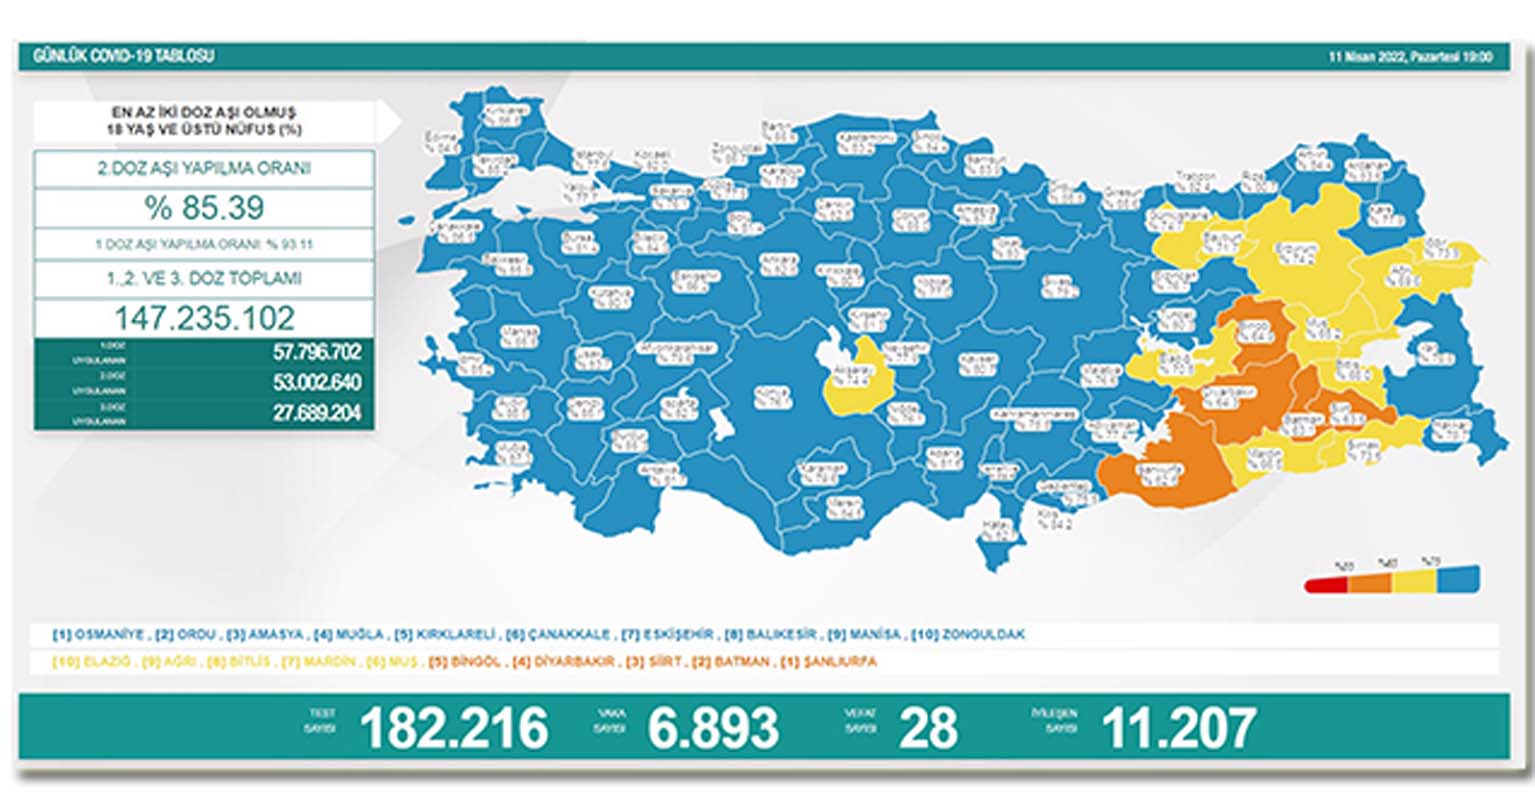 Son dakika: 29 Nisan 2022 Cuma Türkiye Günlük Koronavirüs Tablosu | Son 24 saat korona tablosu